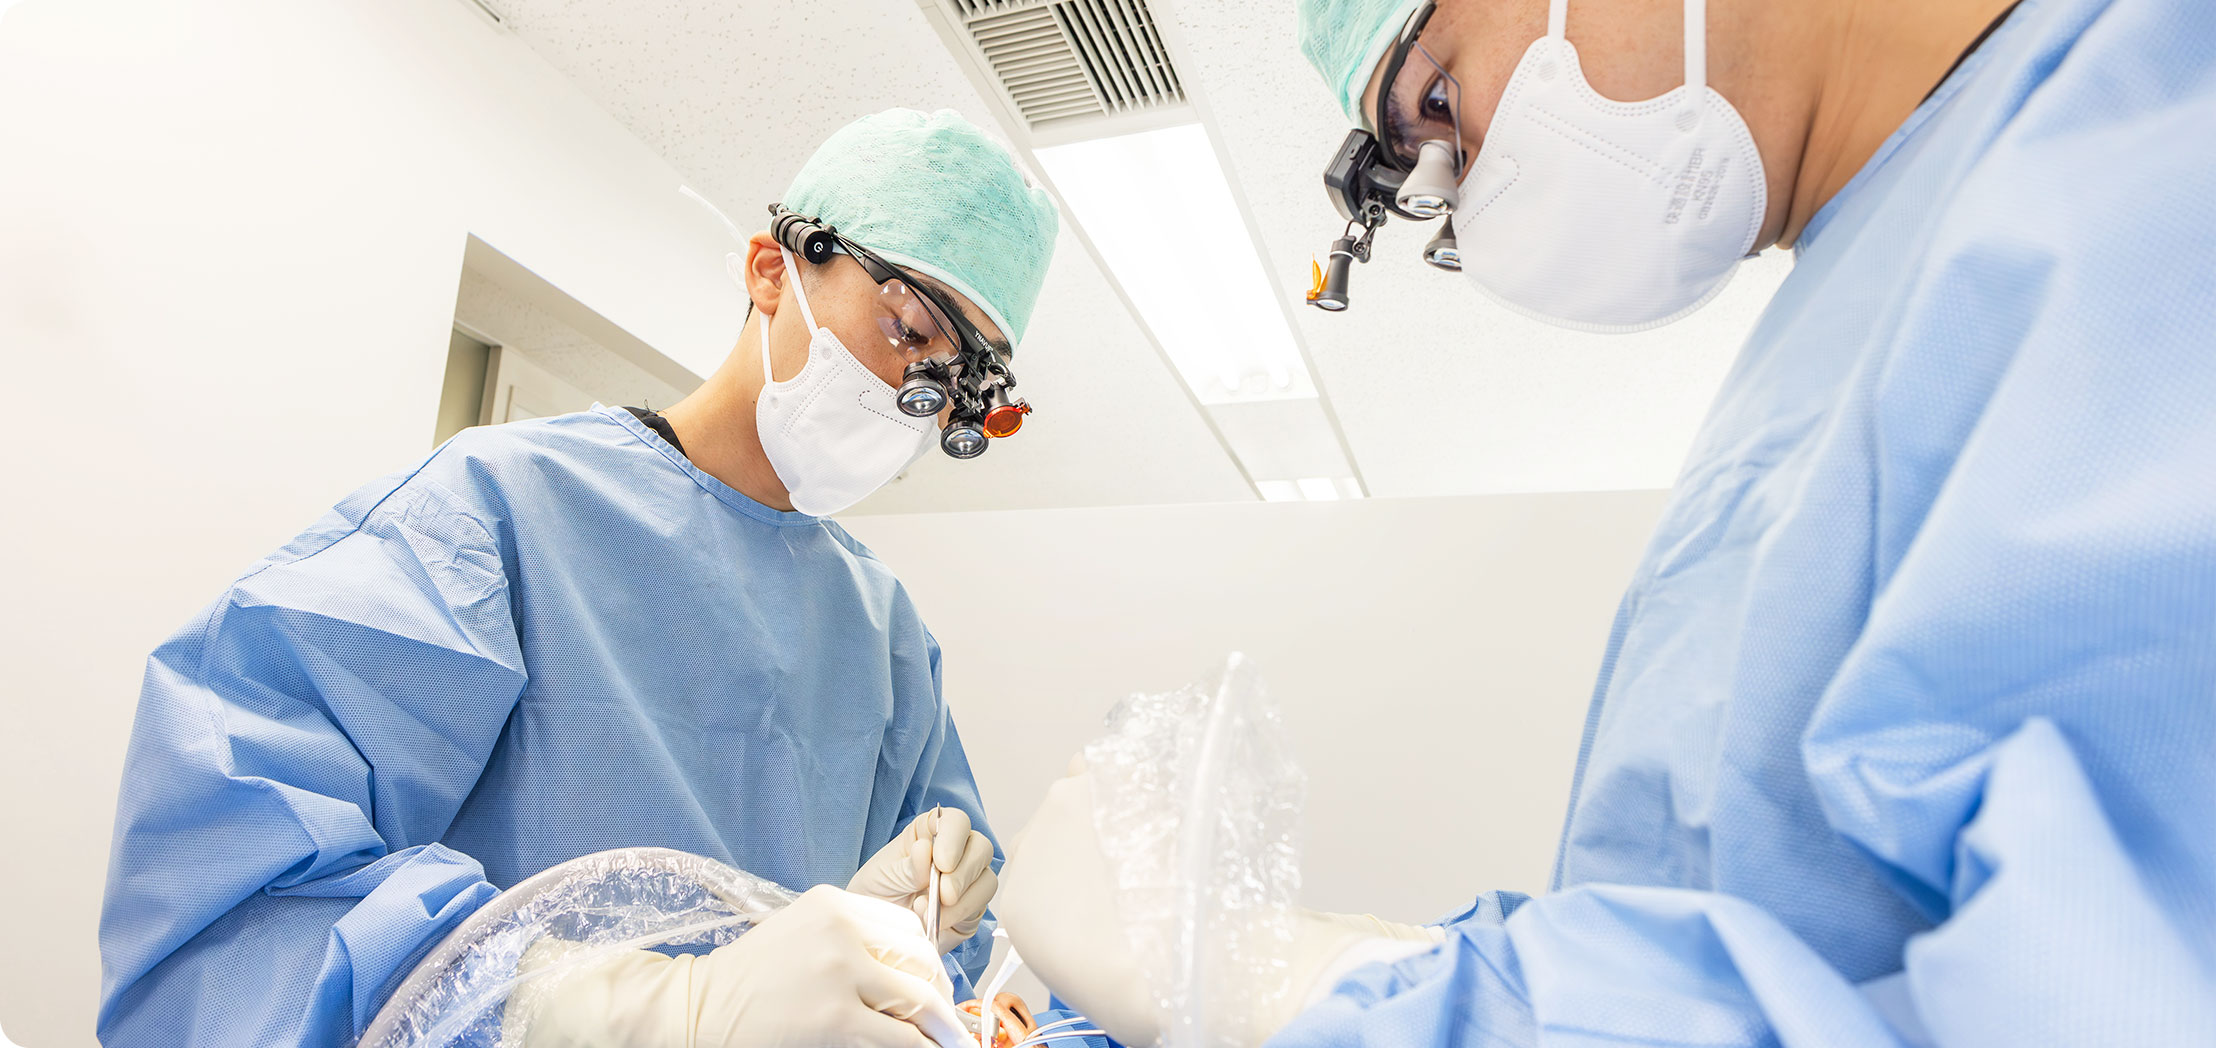 日本口腔外科学会所属の医師がインプラント手術を担当